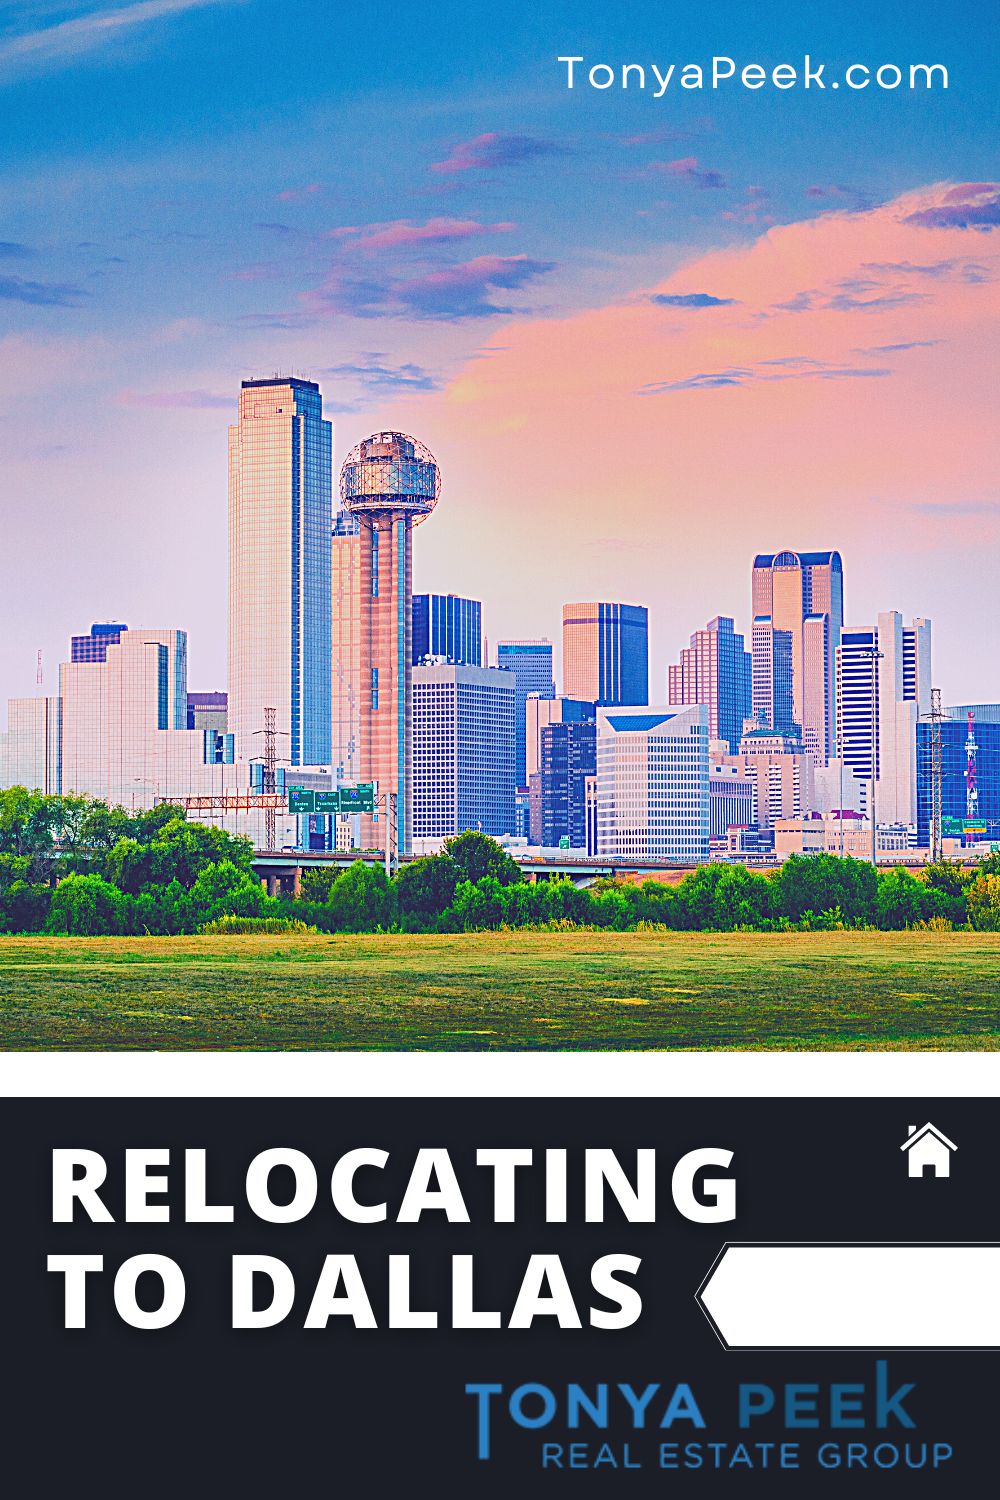  Relocating to Dallas